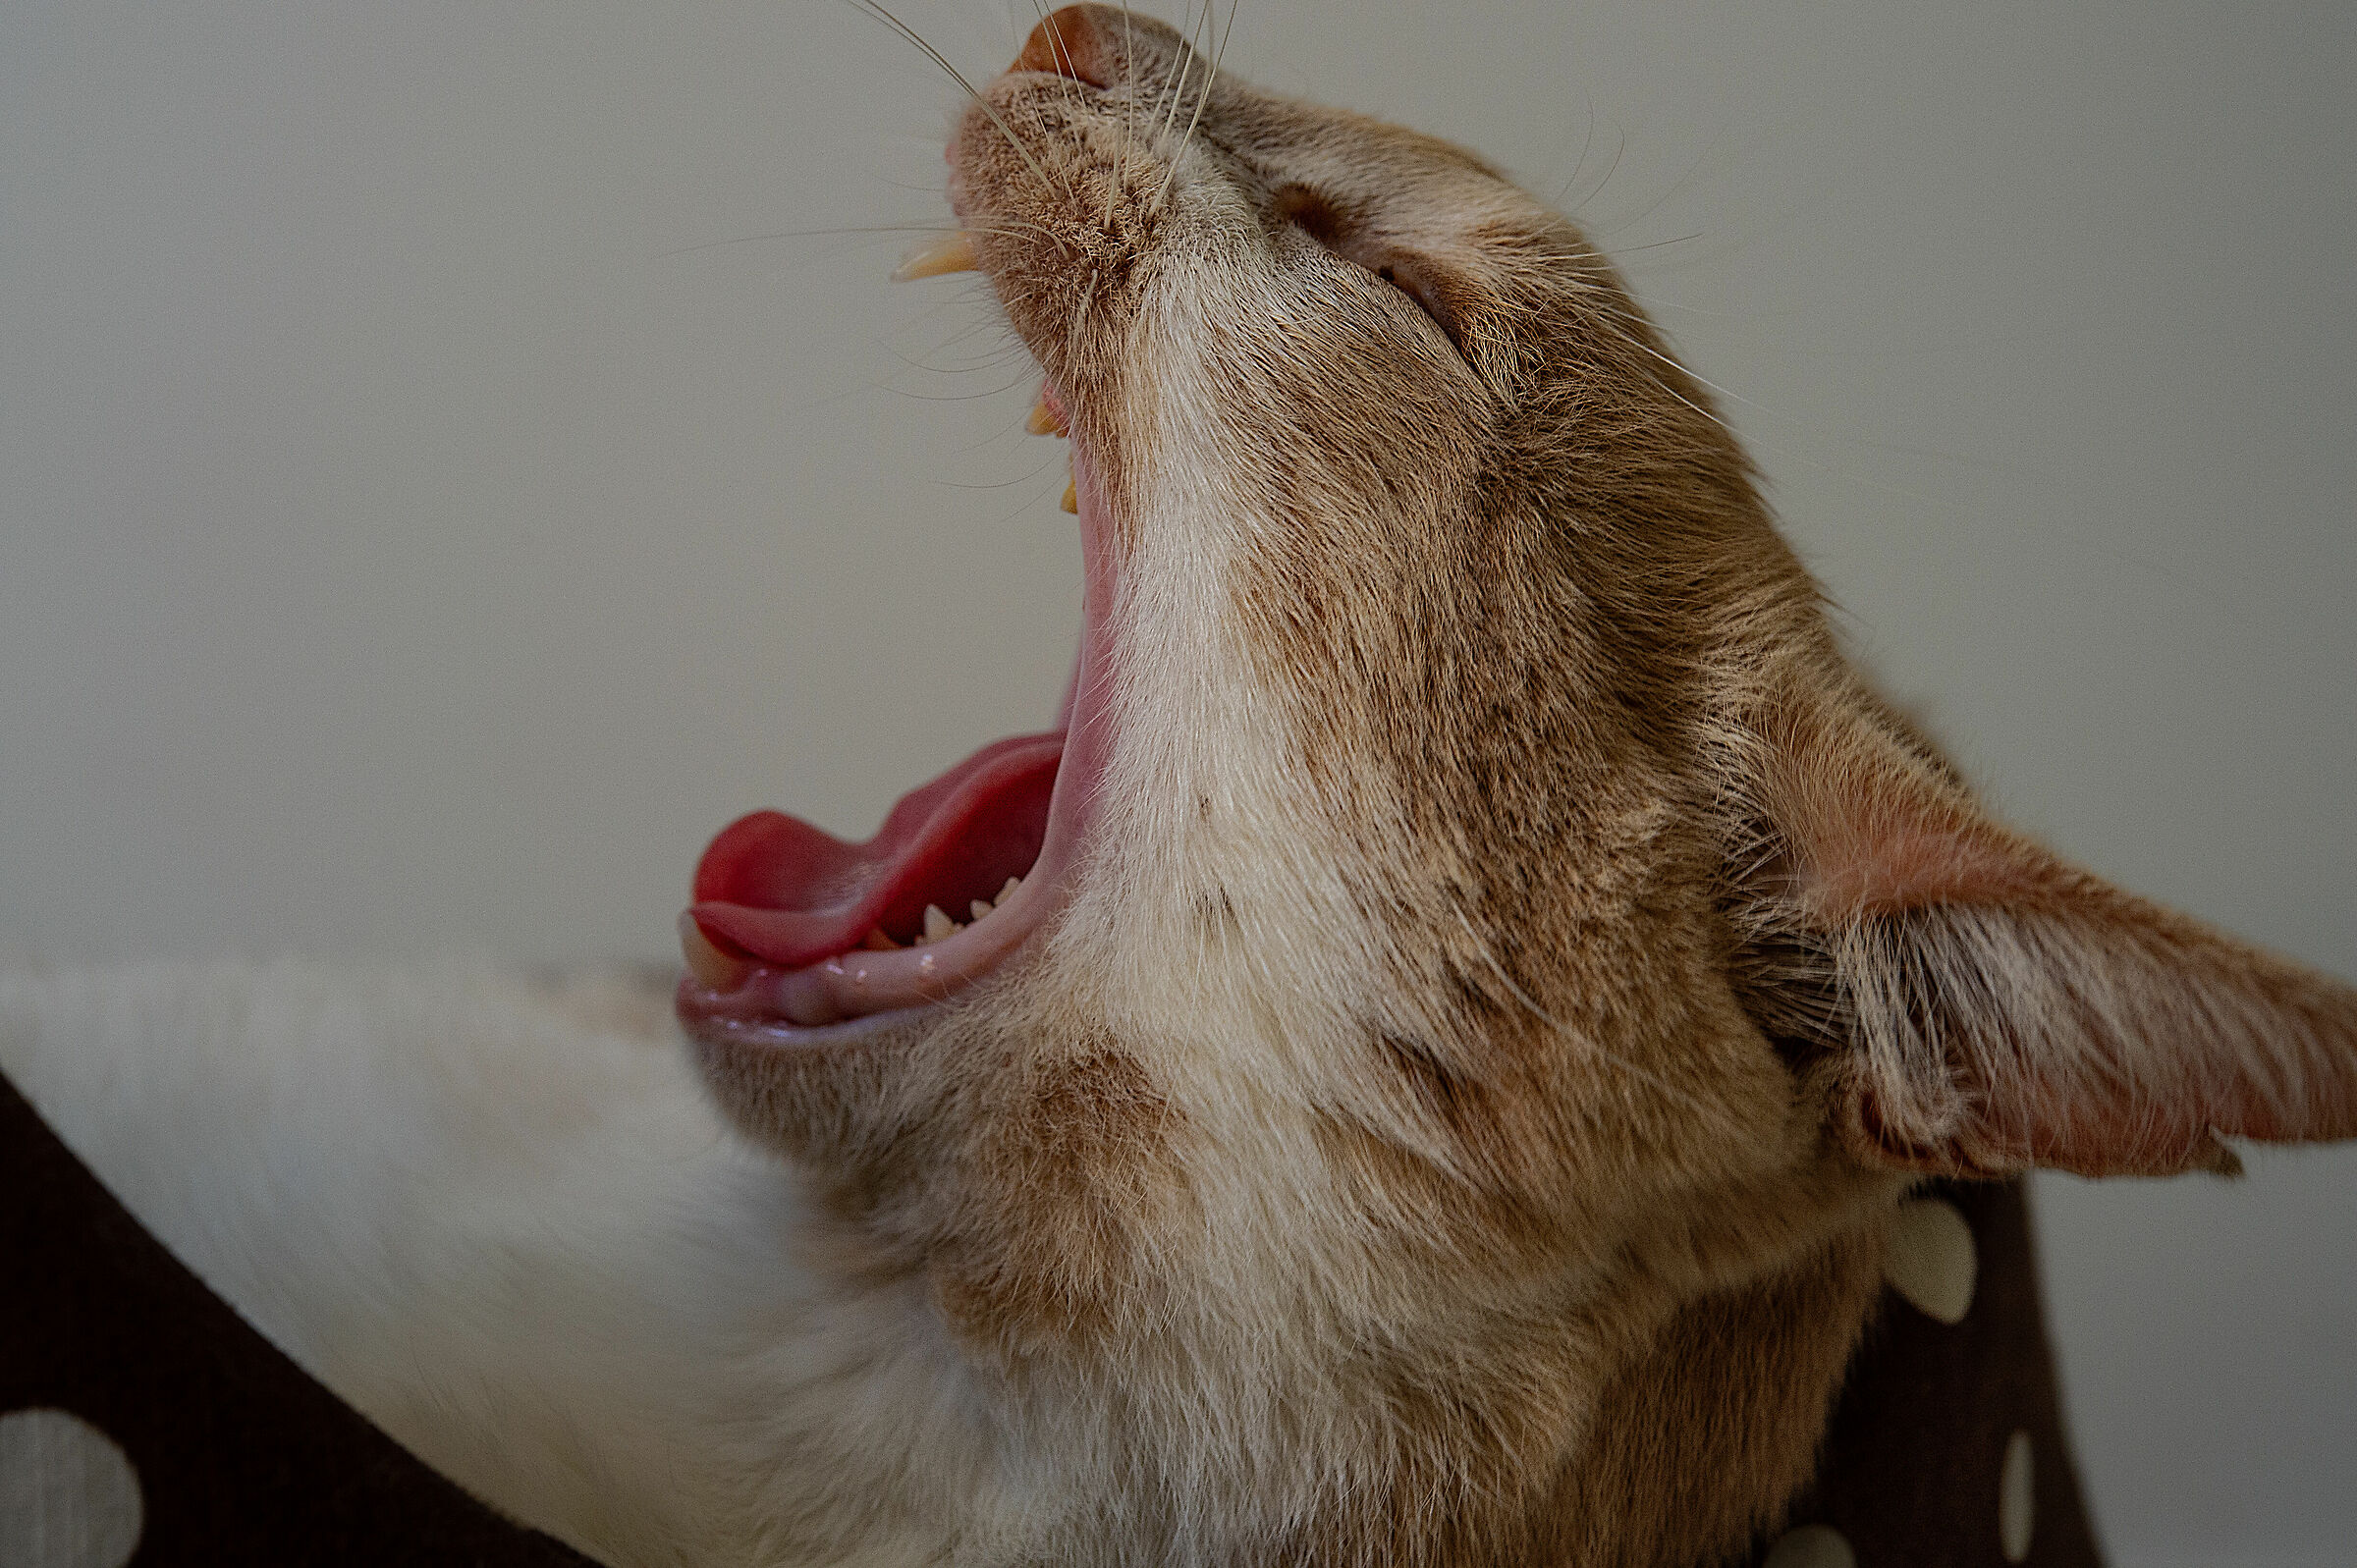 yawn ...